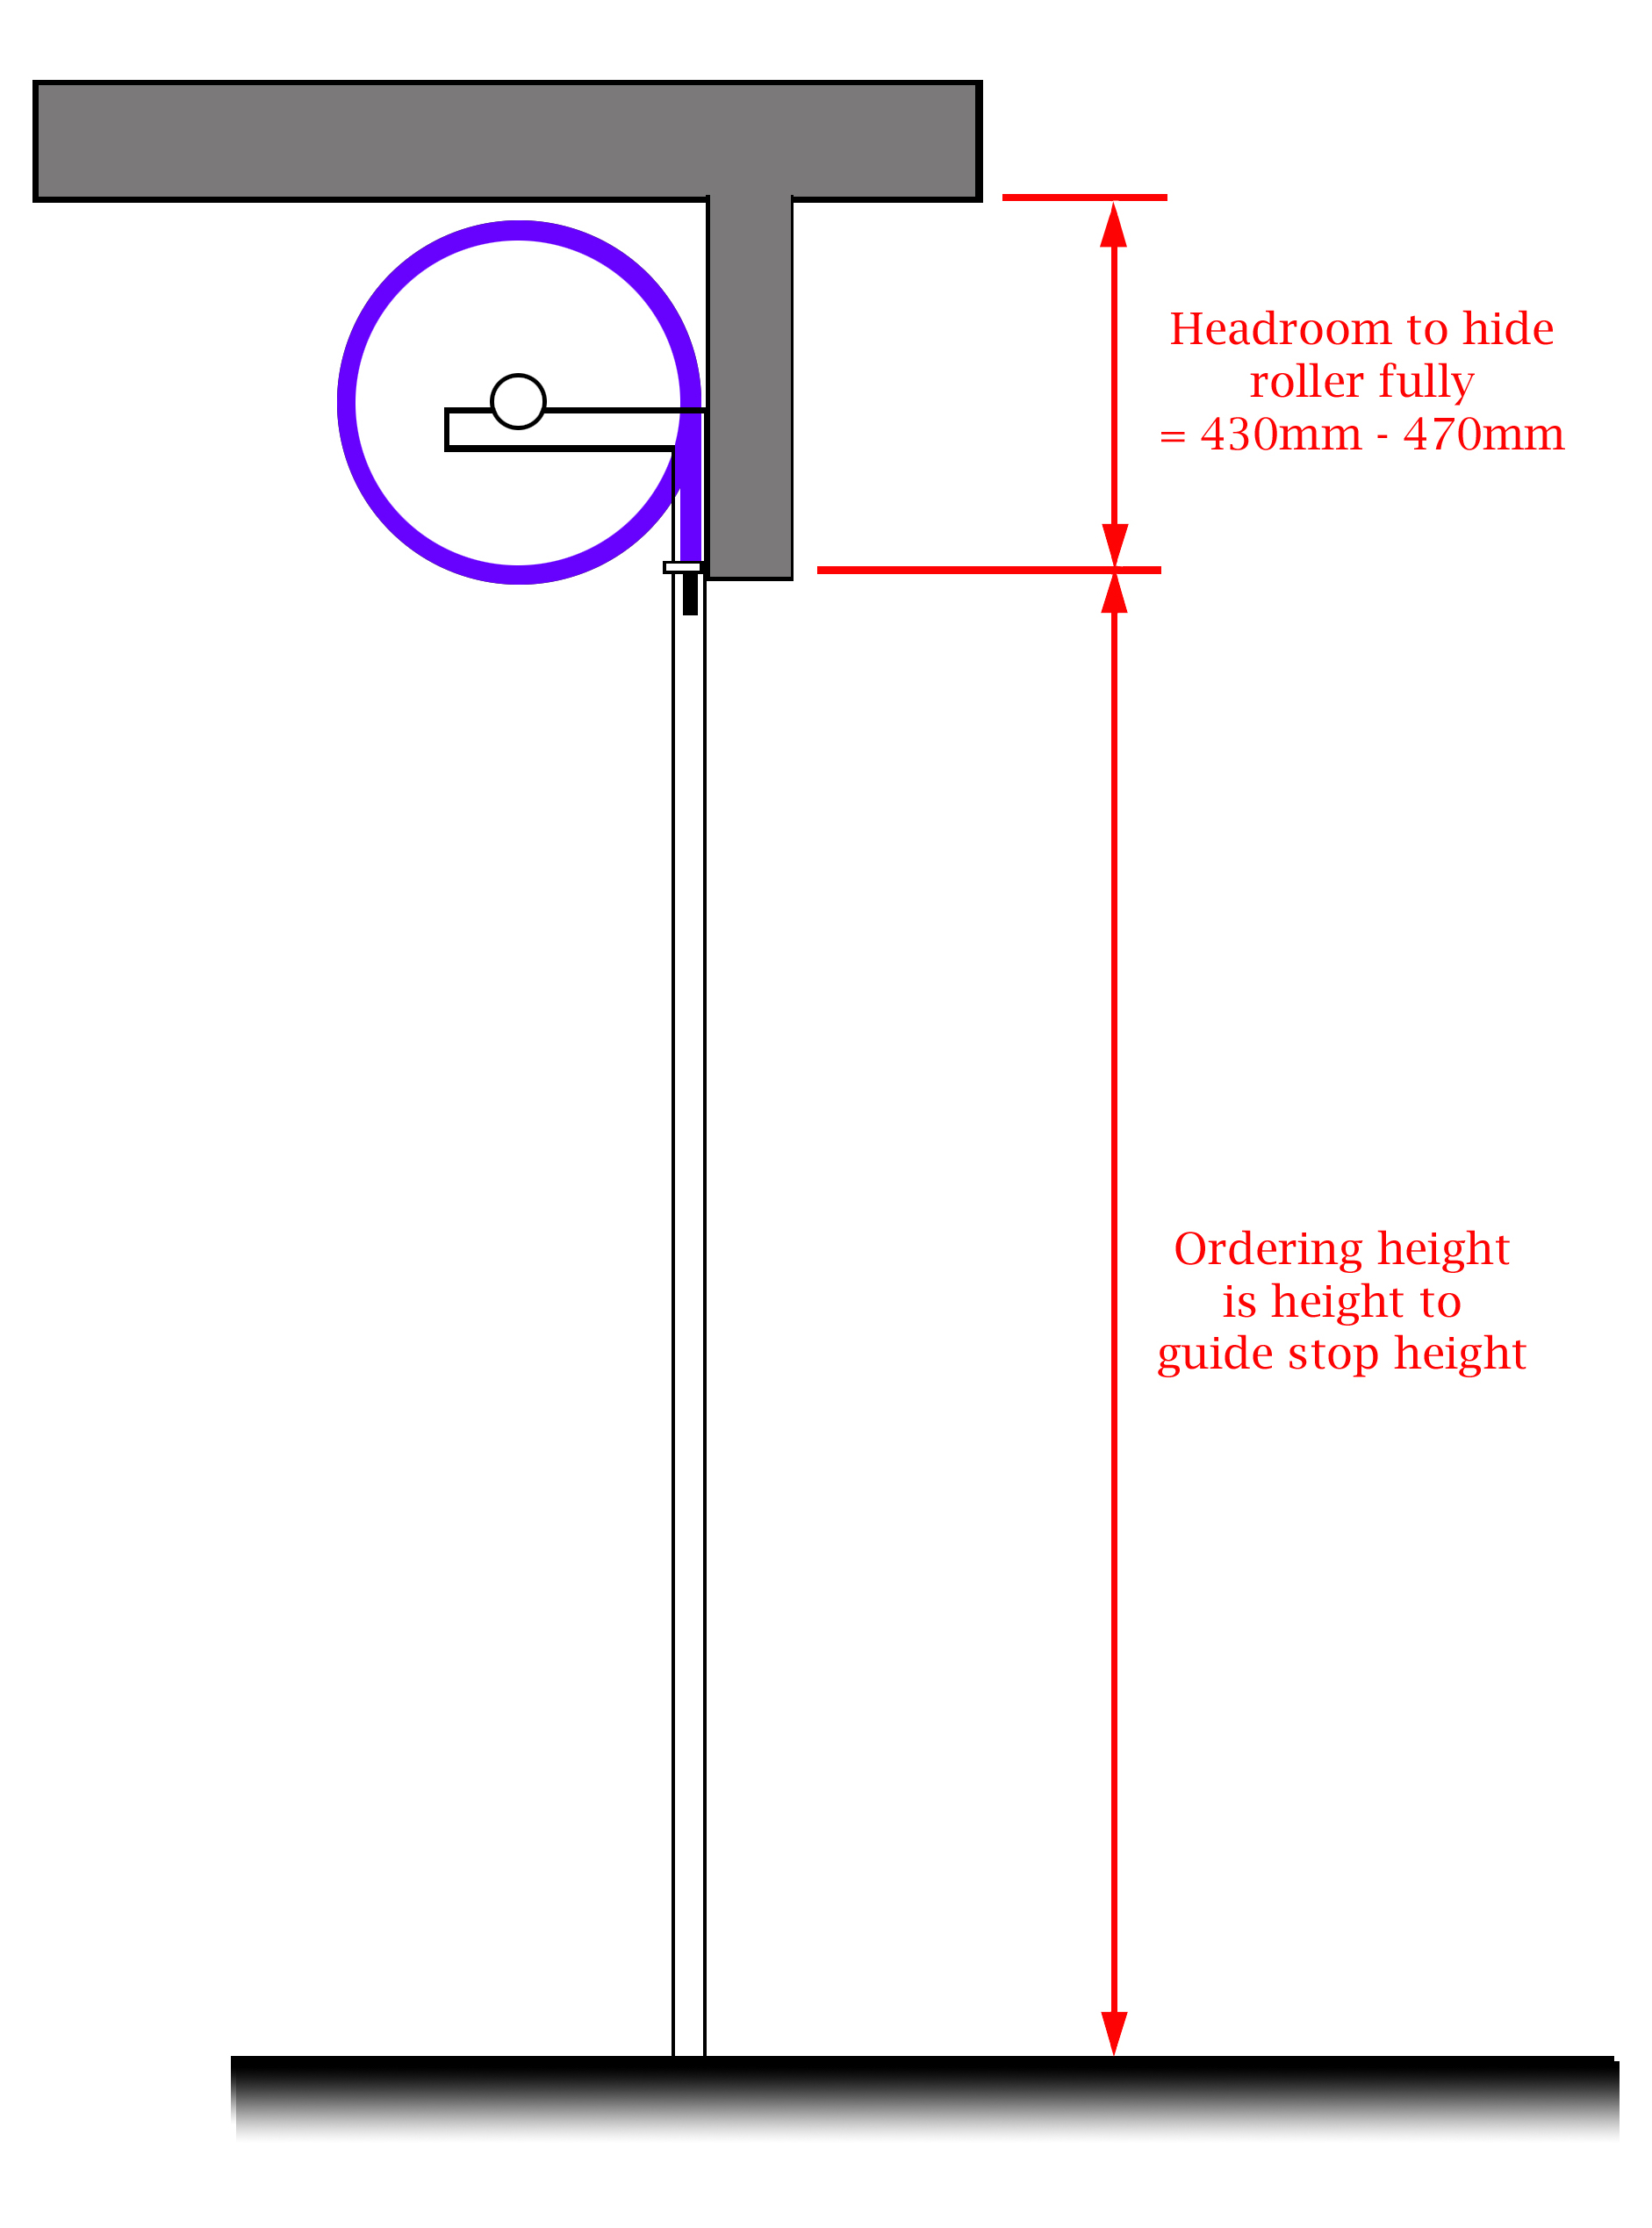 Gliderol roller door headroom requirement diagram